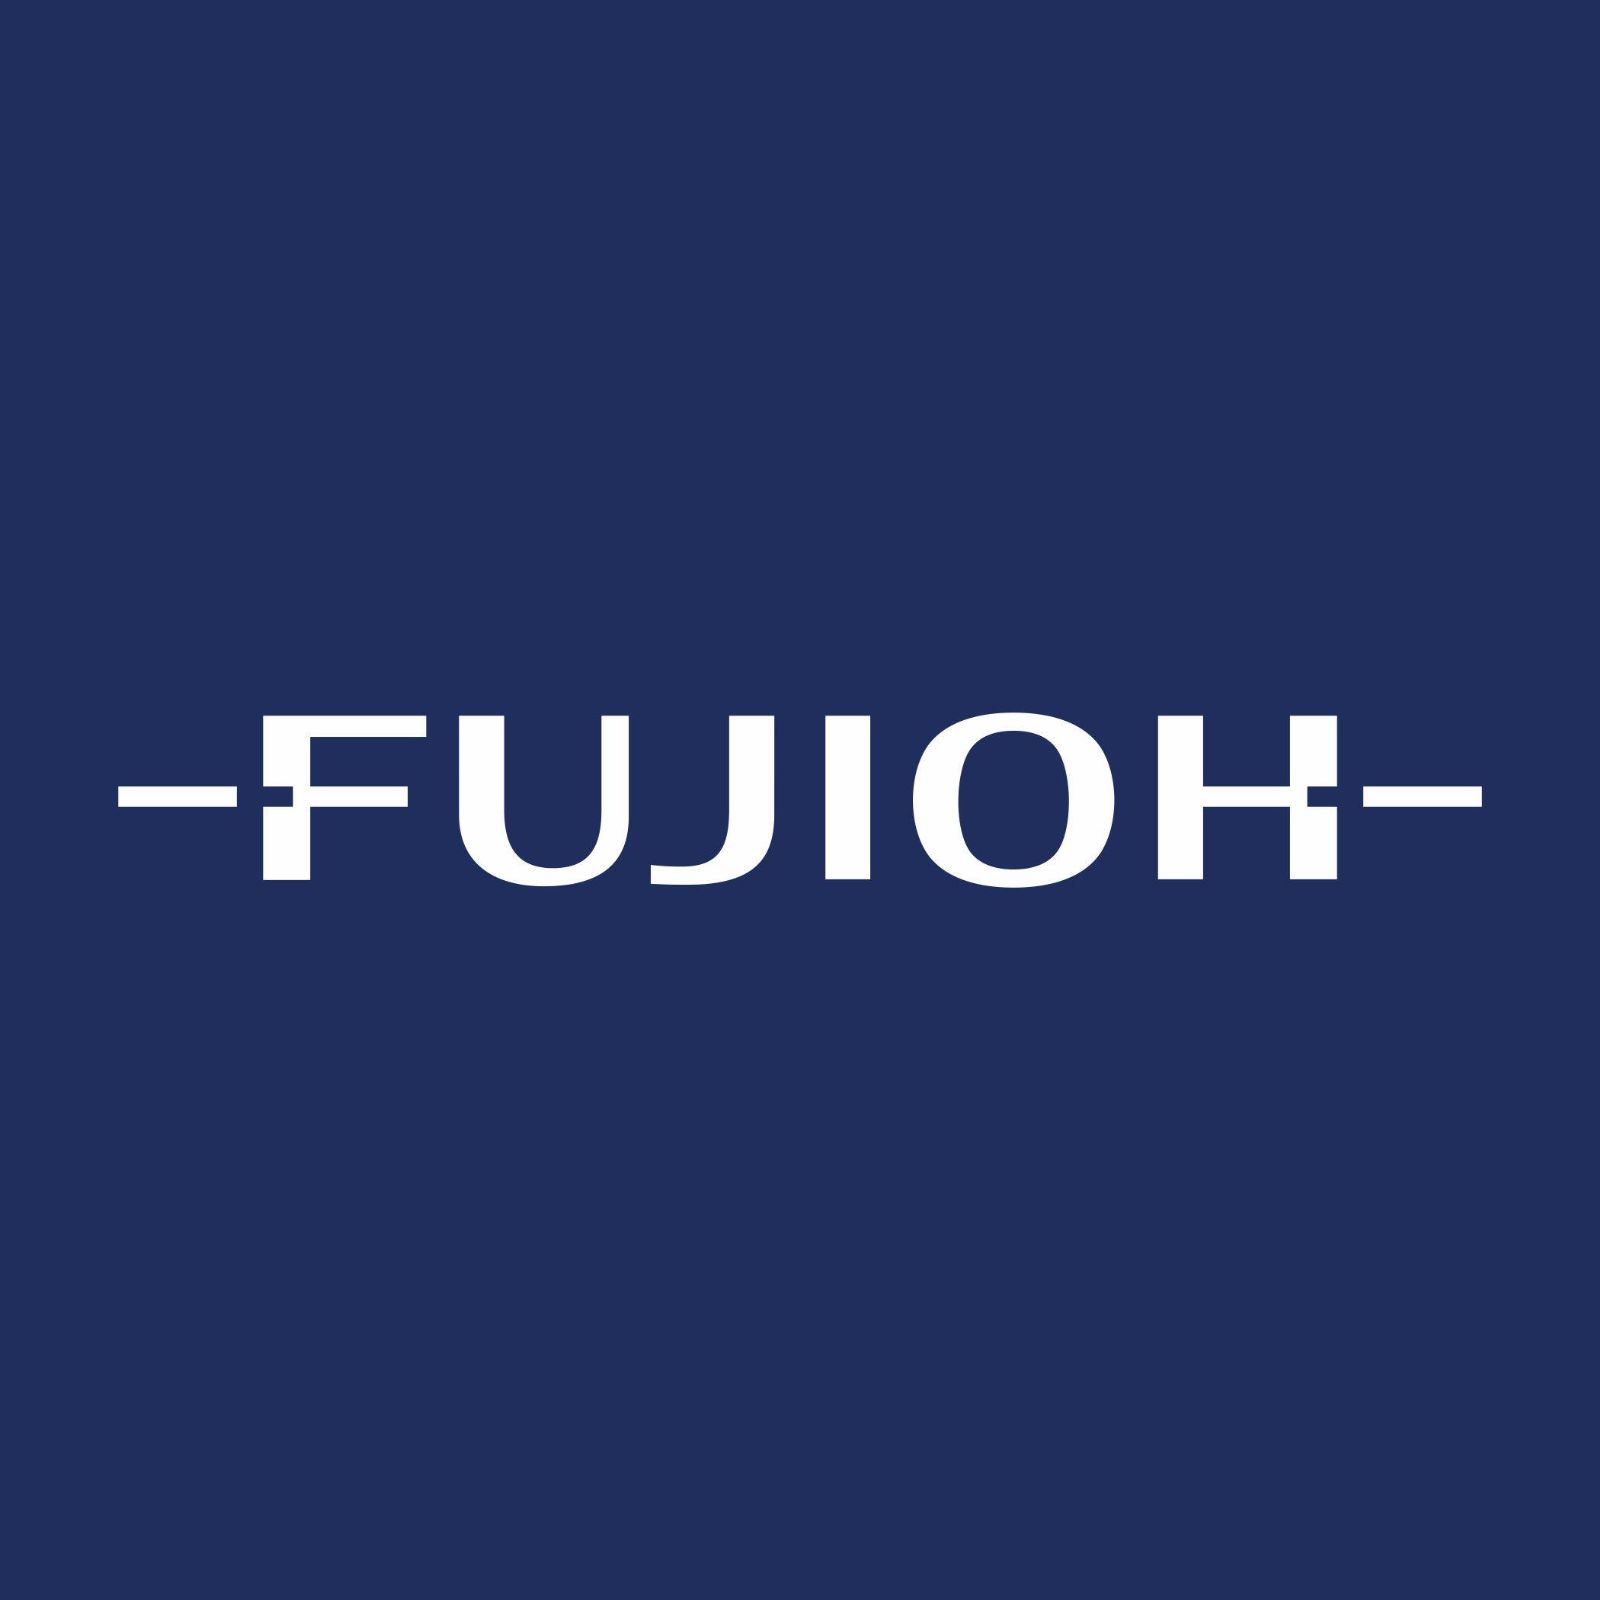 Fujioh